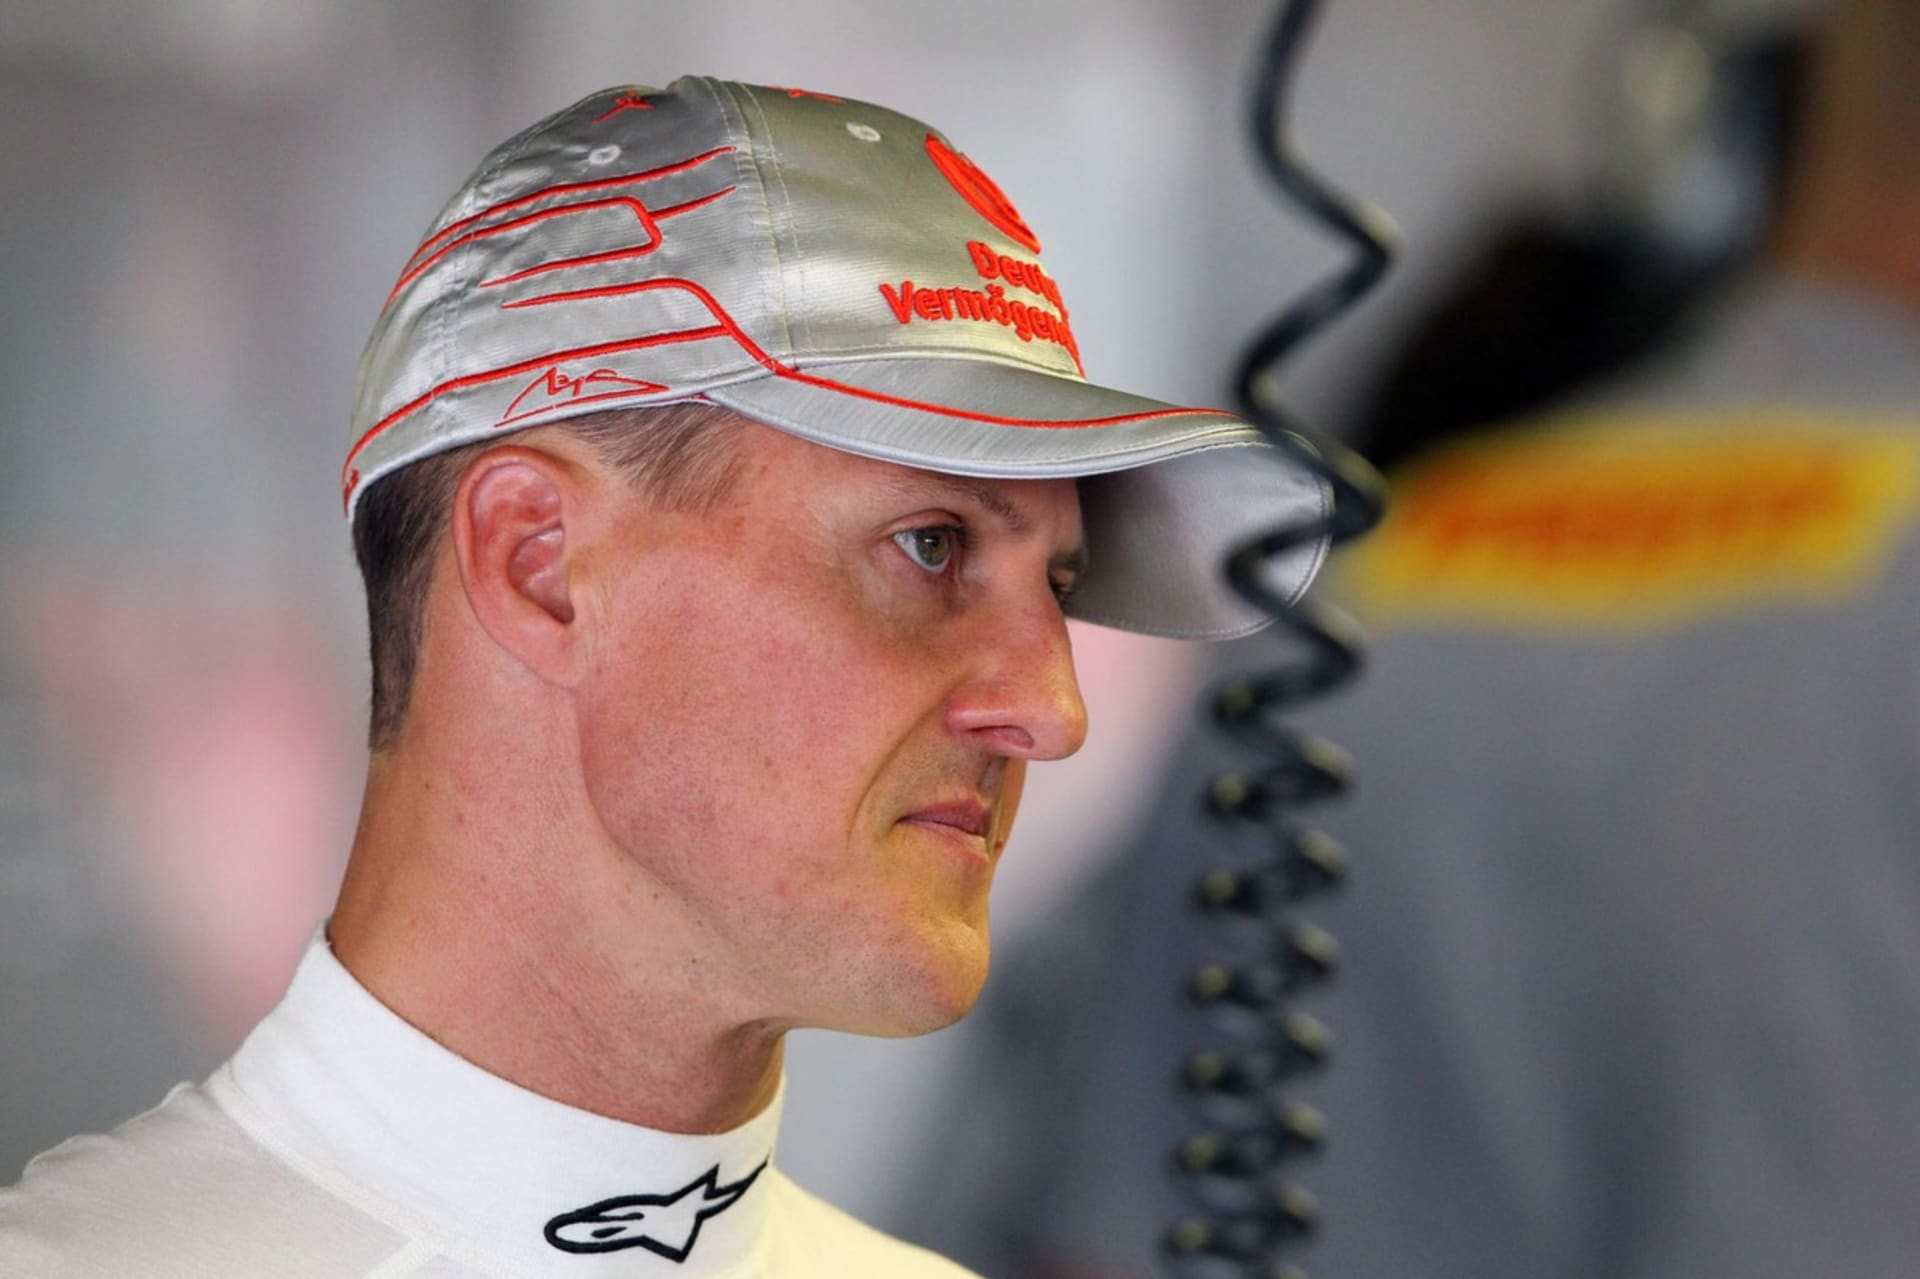 Legendárního závodníka Michaela Schumachera zradil jeden z jeho nejbližších přátel.